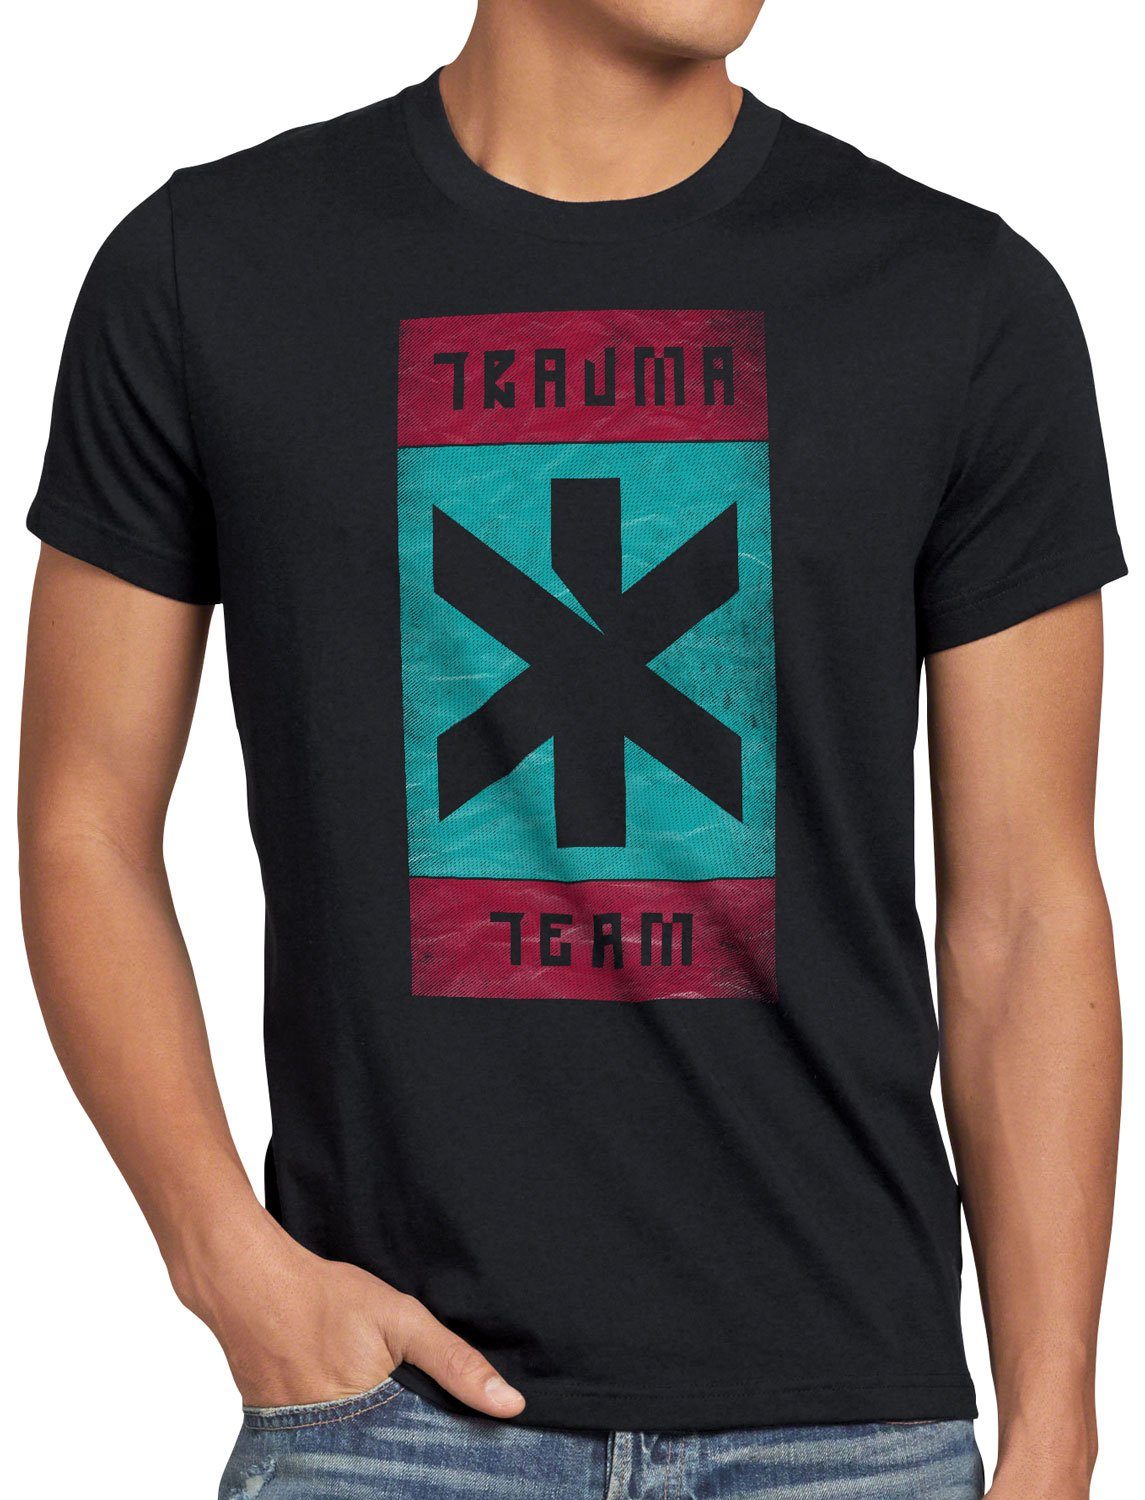 style3 Print-Shirt Herren T-Shirt Cyberpunk Trauma Team silverhand samurai